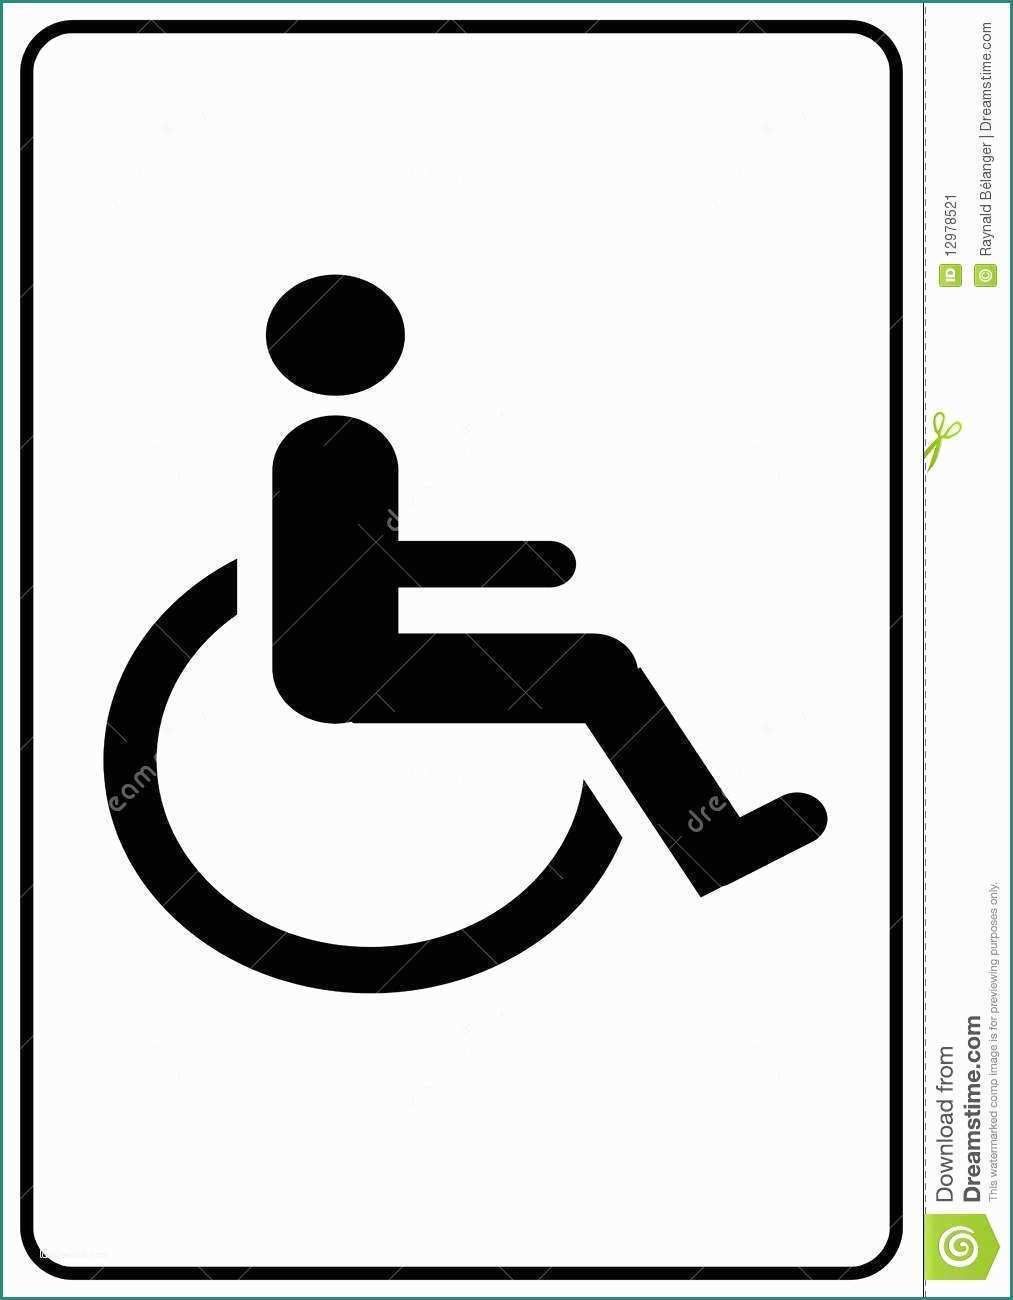 Simbolo Handicap Dwg E Handicap Symbol Stock Image Image